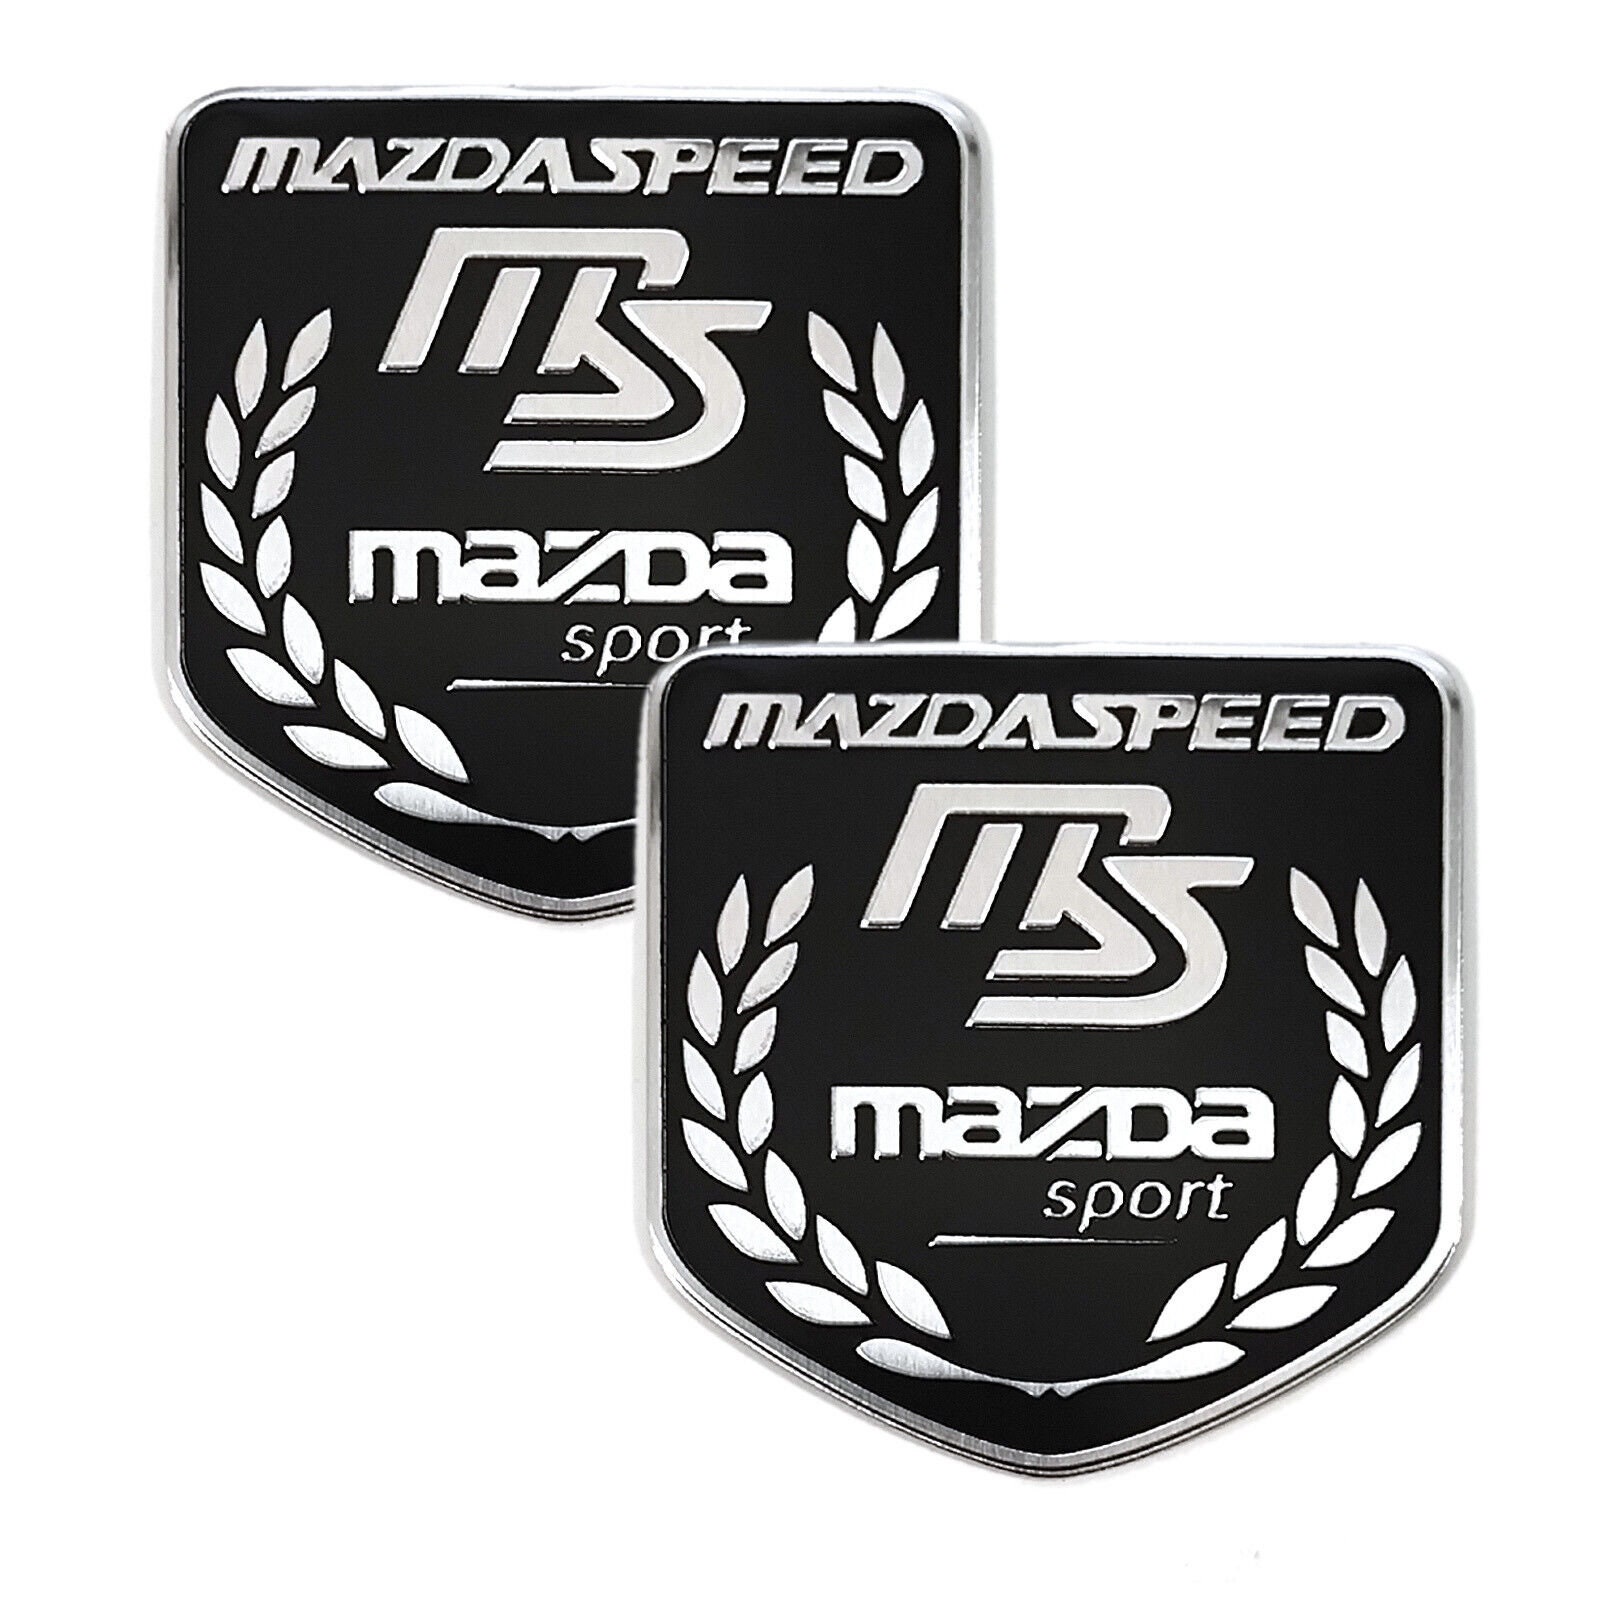 Mazda speed sticker - .de